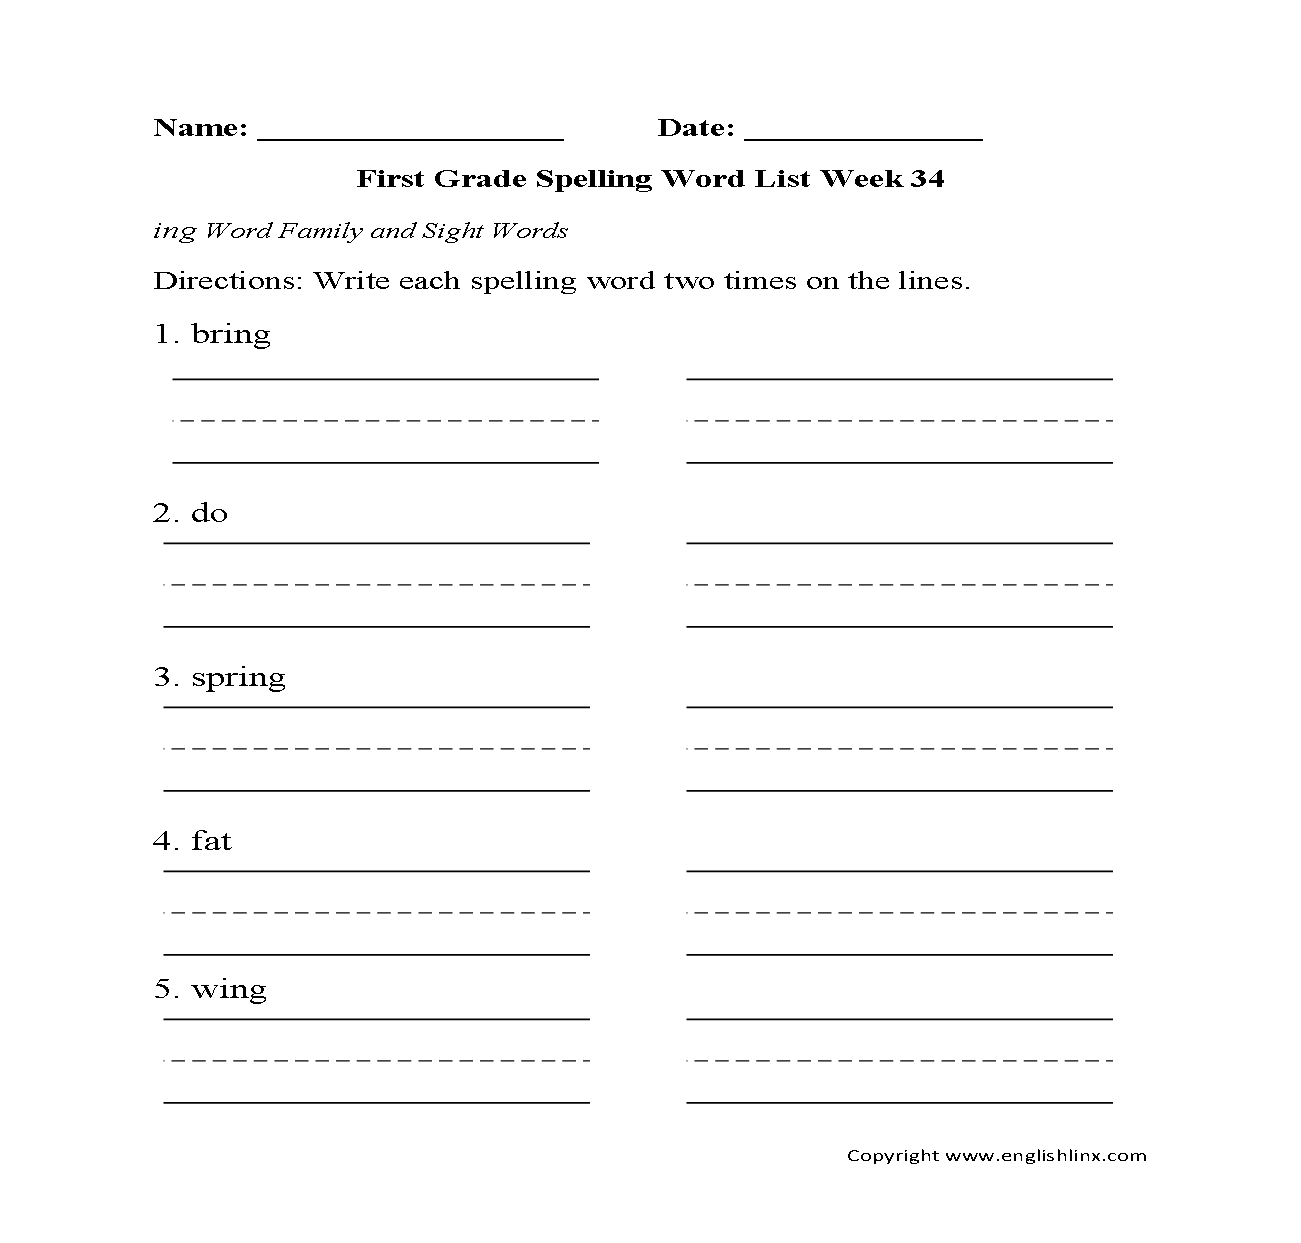 Week 34 ing family First Grade Spelling Words Worksheet